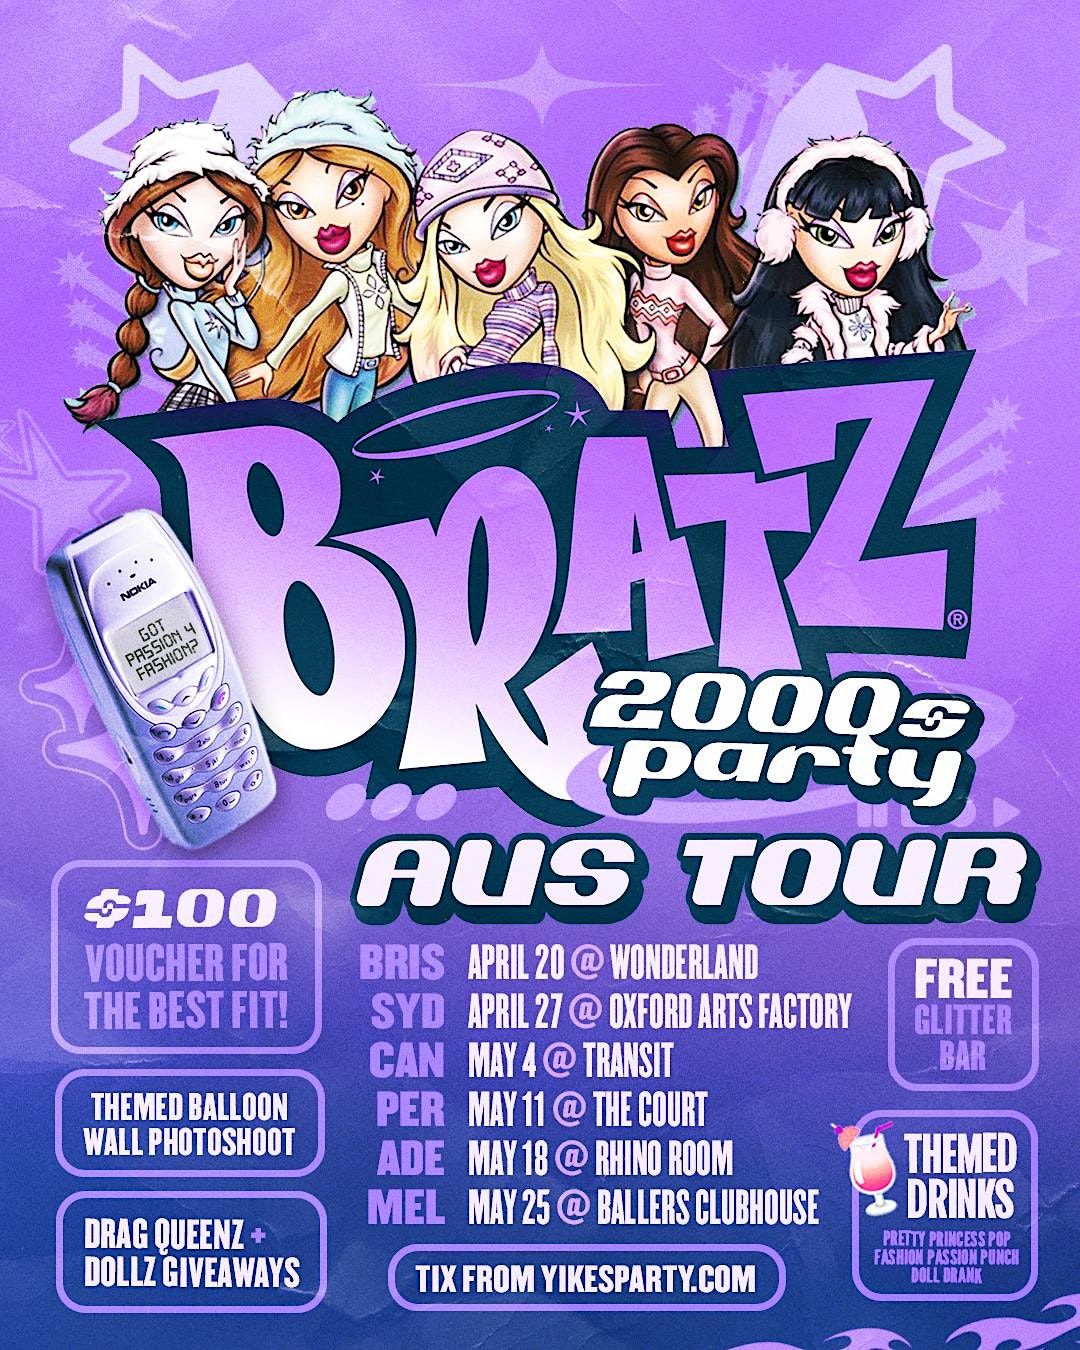 BRATZ 2000s Party Melbourne